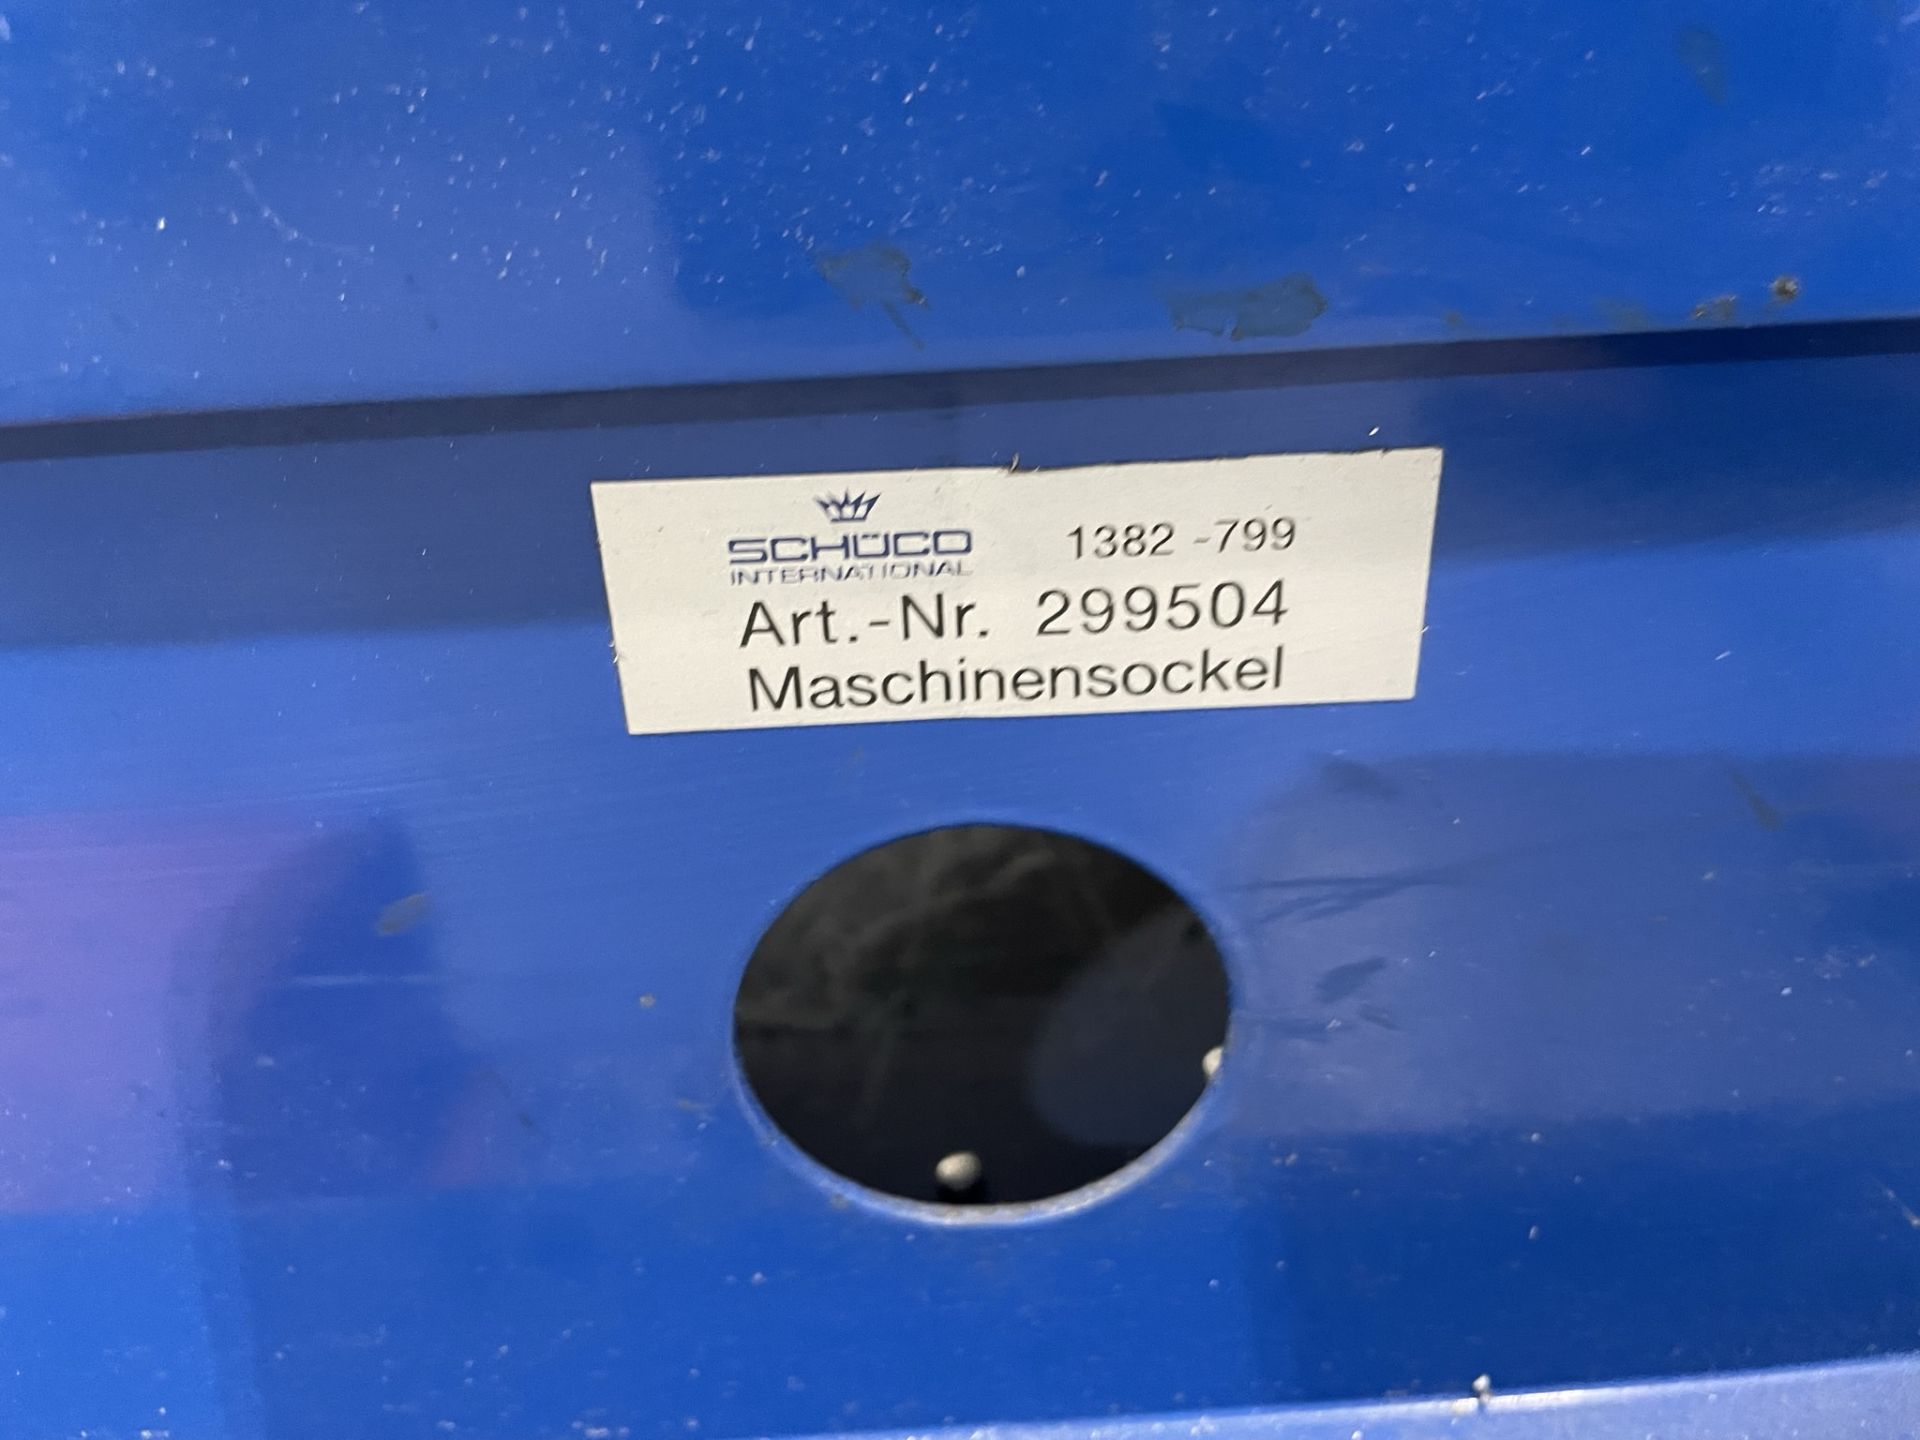 Schuco, 1382-799 pneumatic press, Serial No. 299504 and four station press tool - Bild 3 aus 3